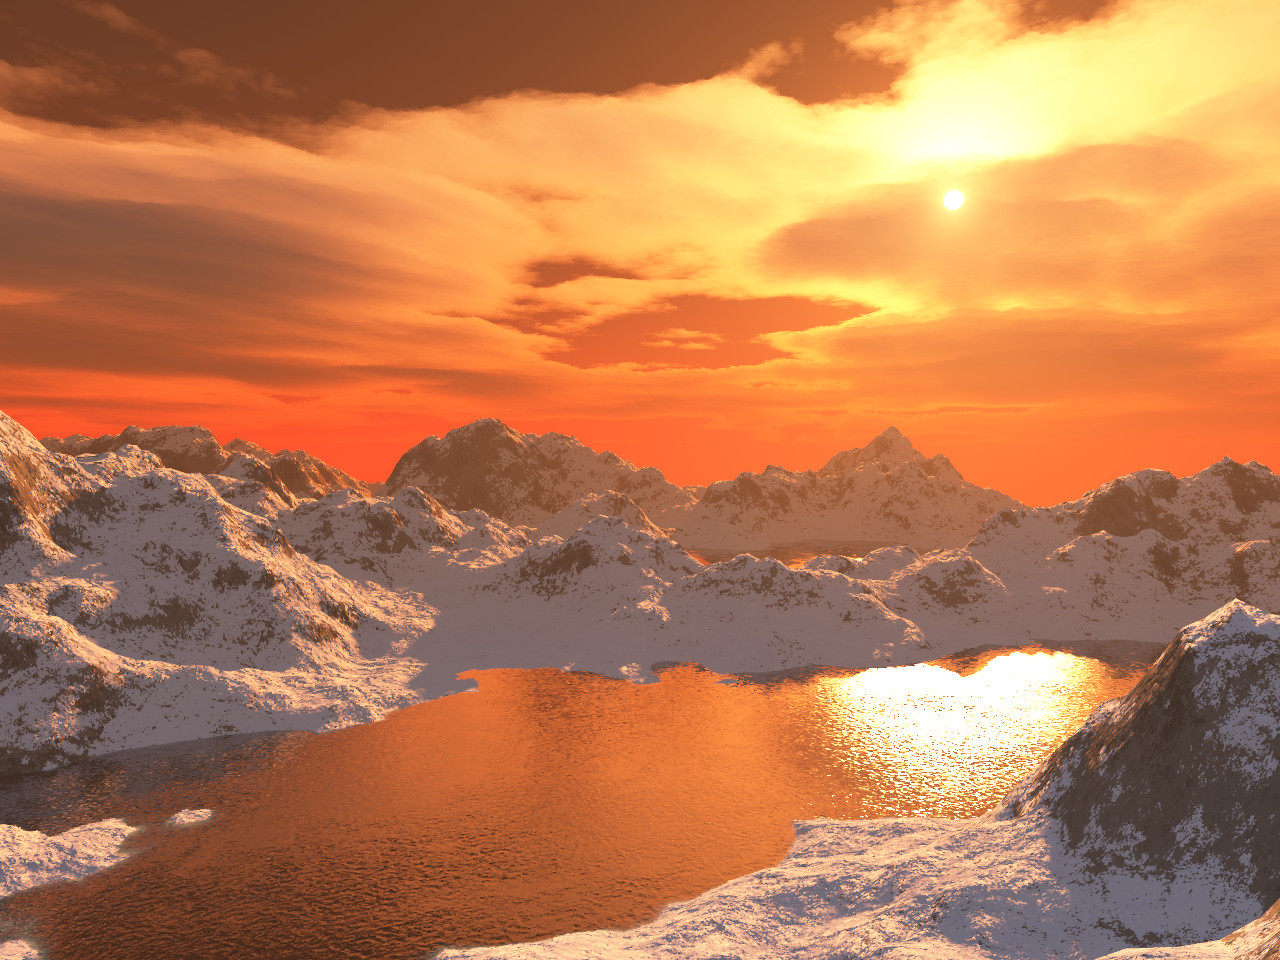 terragen_1_image__arctic_sunset_9_by_theelectrokangaroo-d4qj35a.jpg